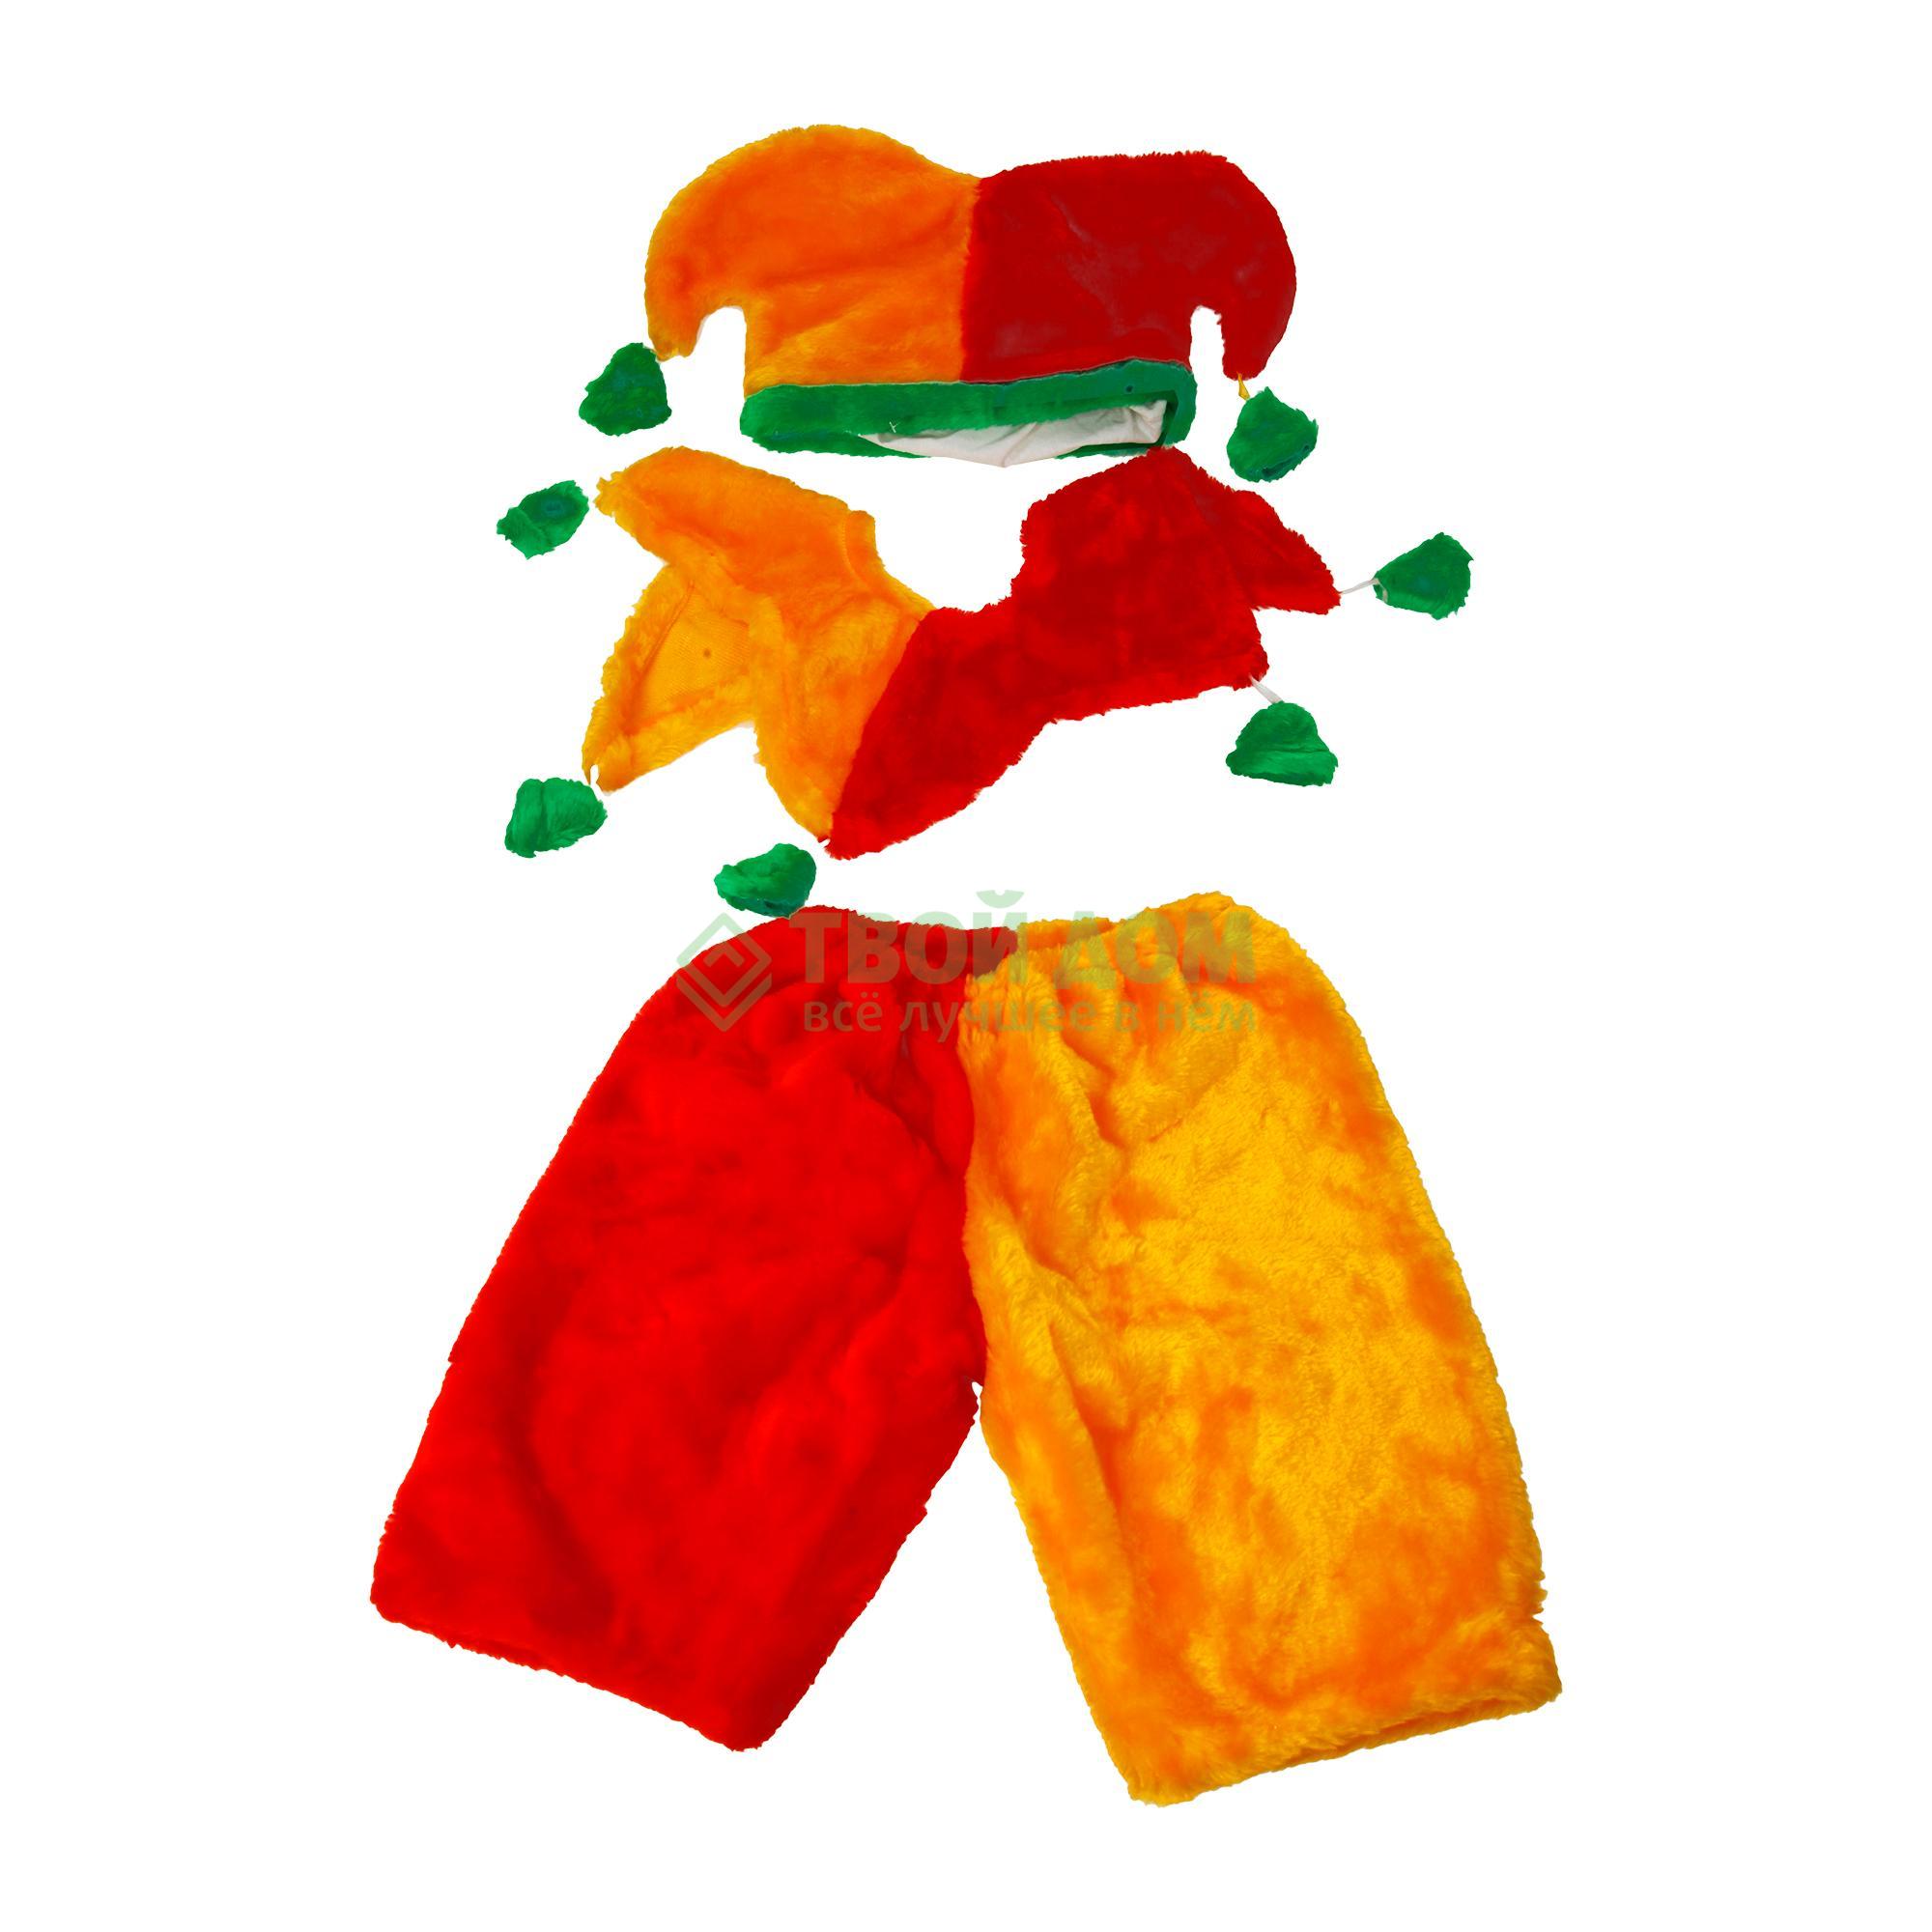 Артэ-Грим Карнавальный костюм петрушка артэ грим карнавальный костюм овечка